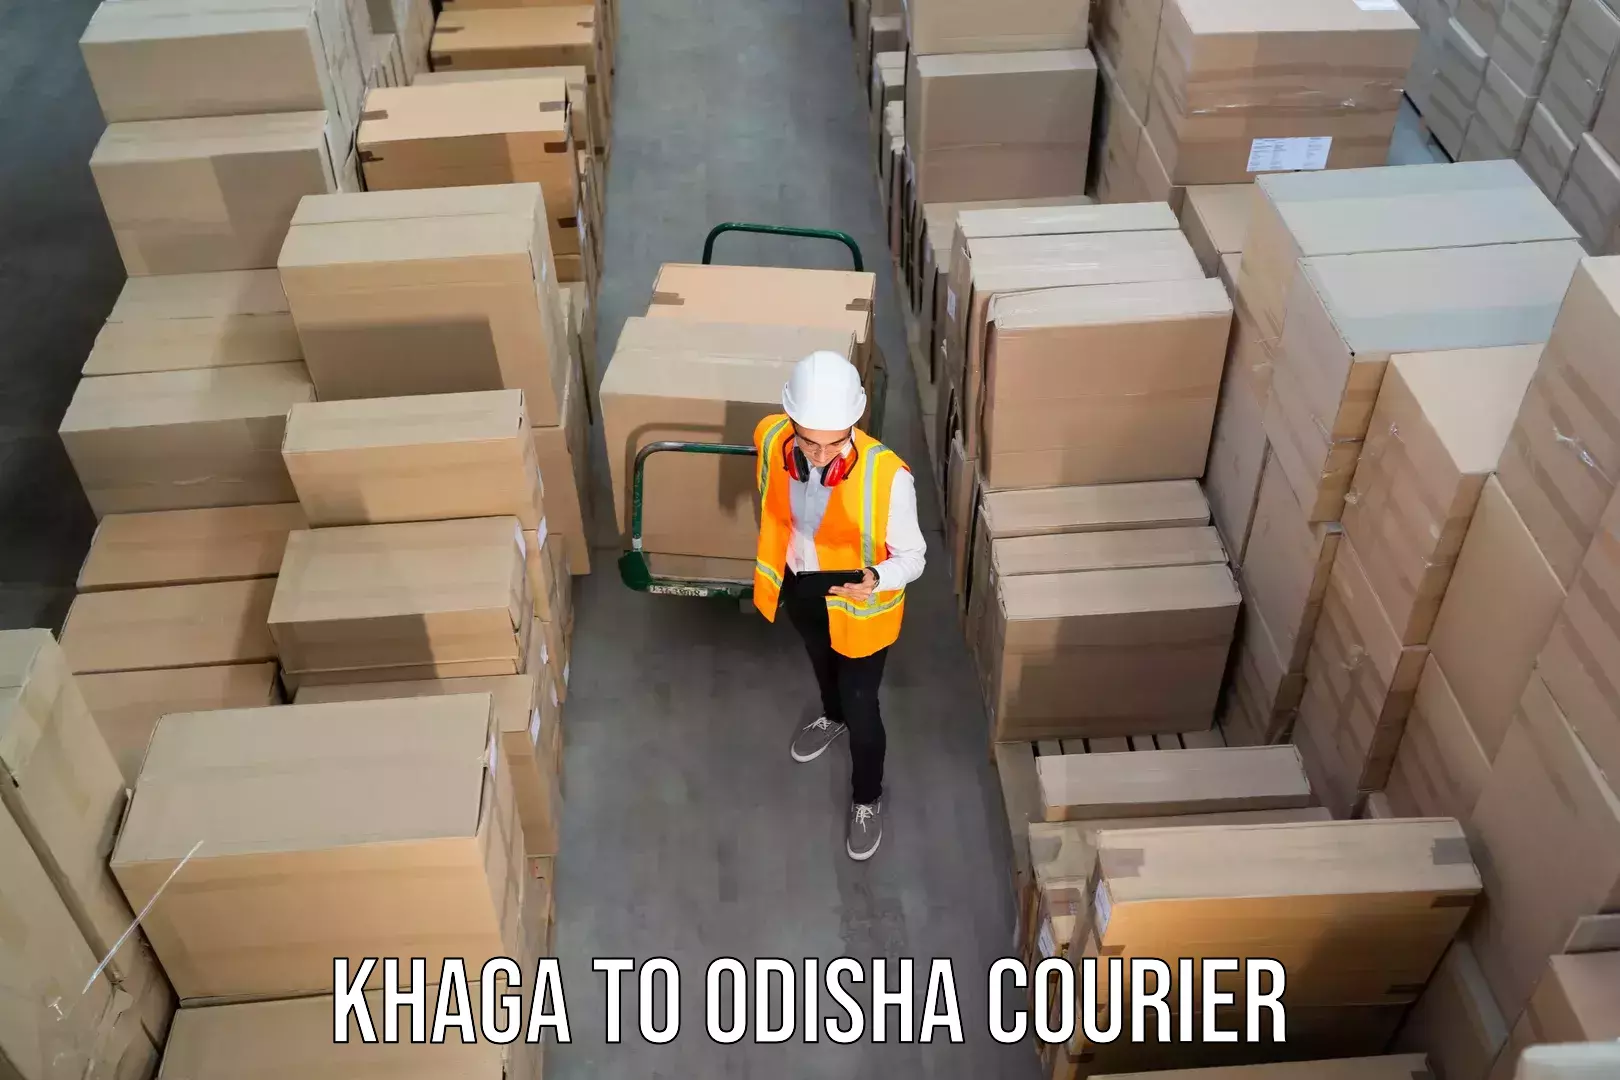 Premium delivery services Khaga to Odisha